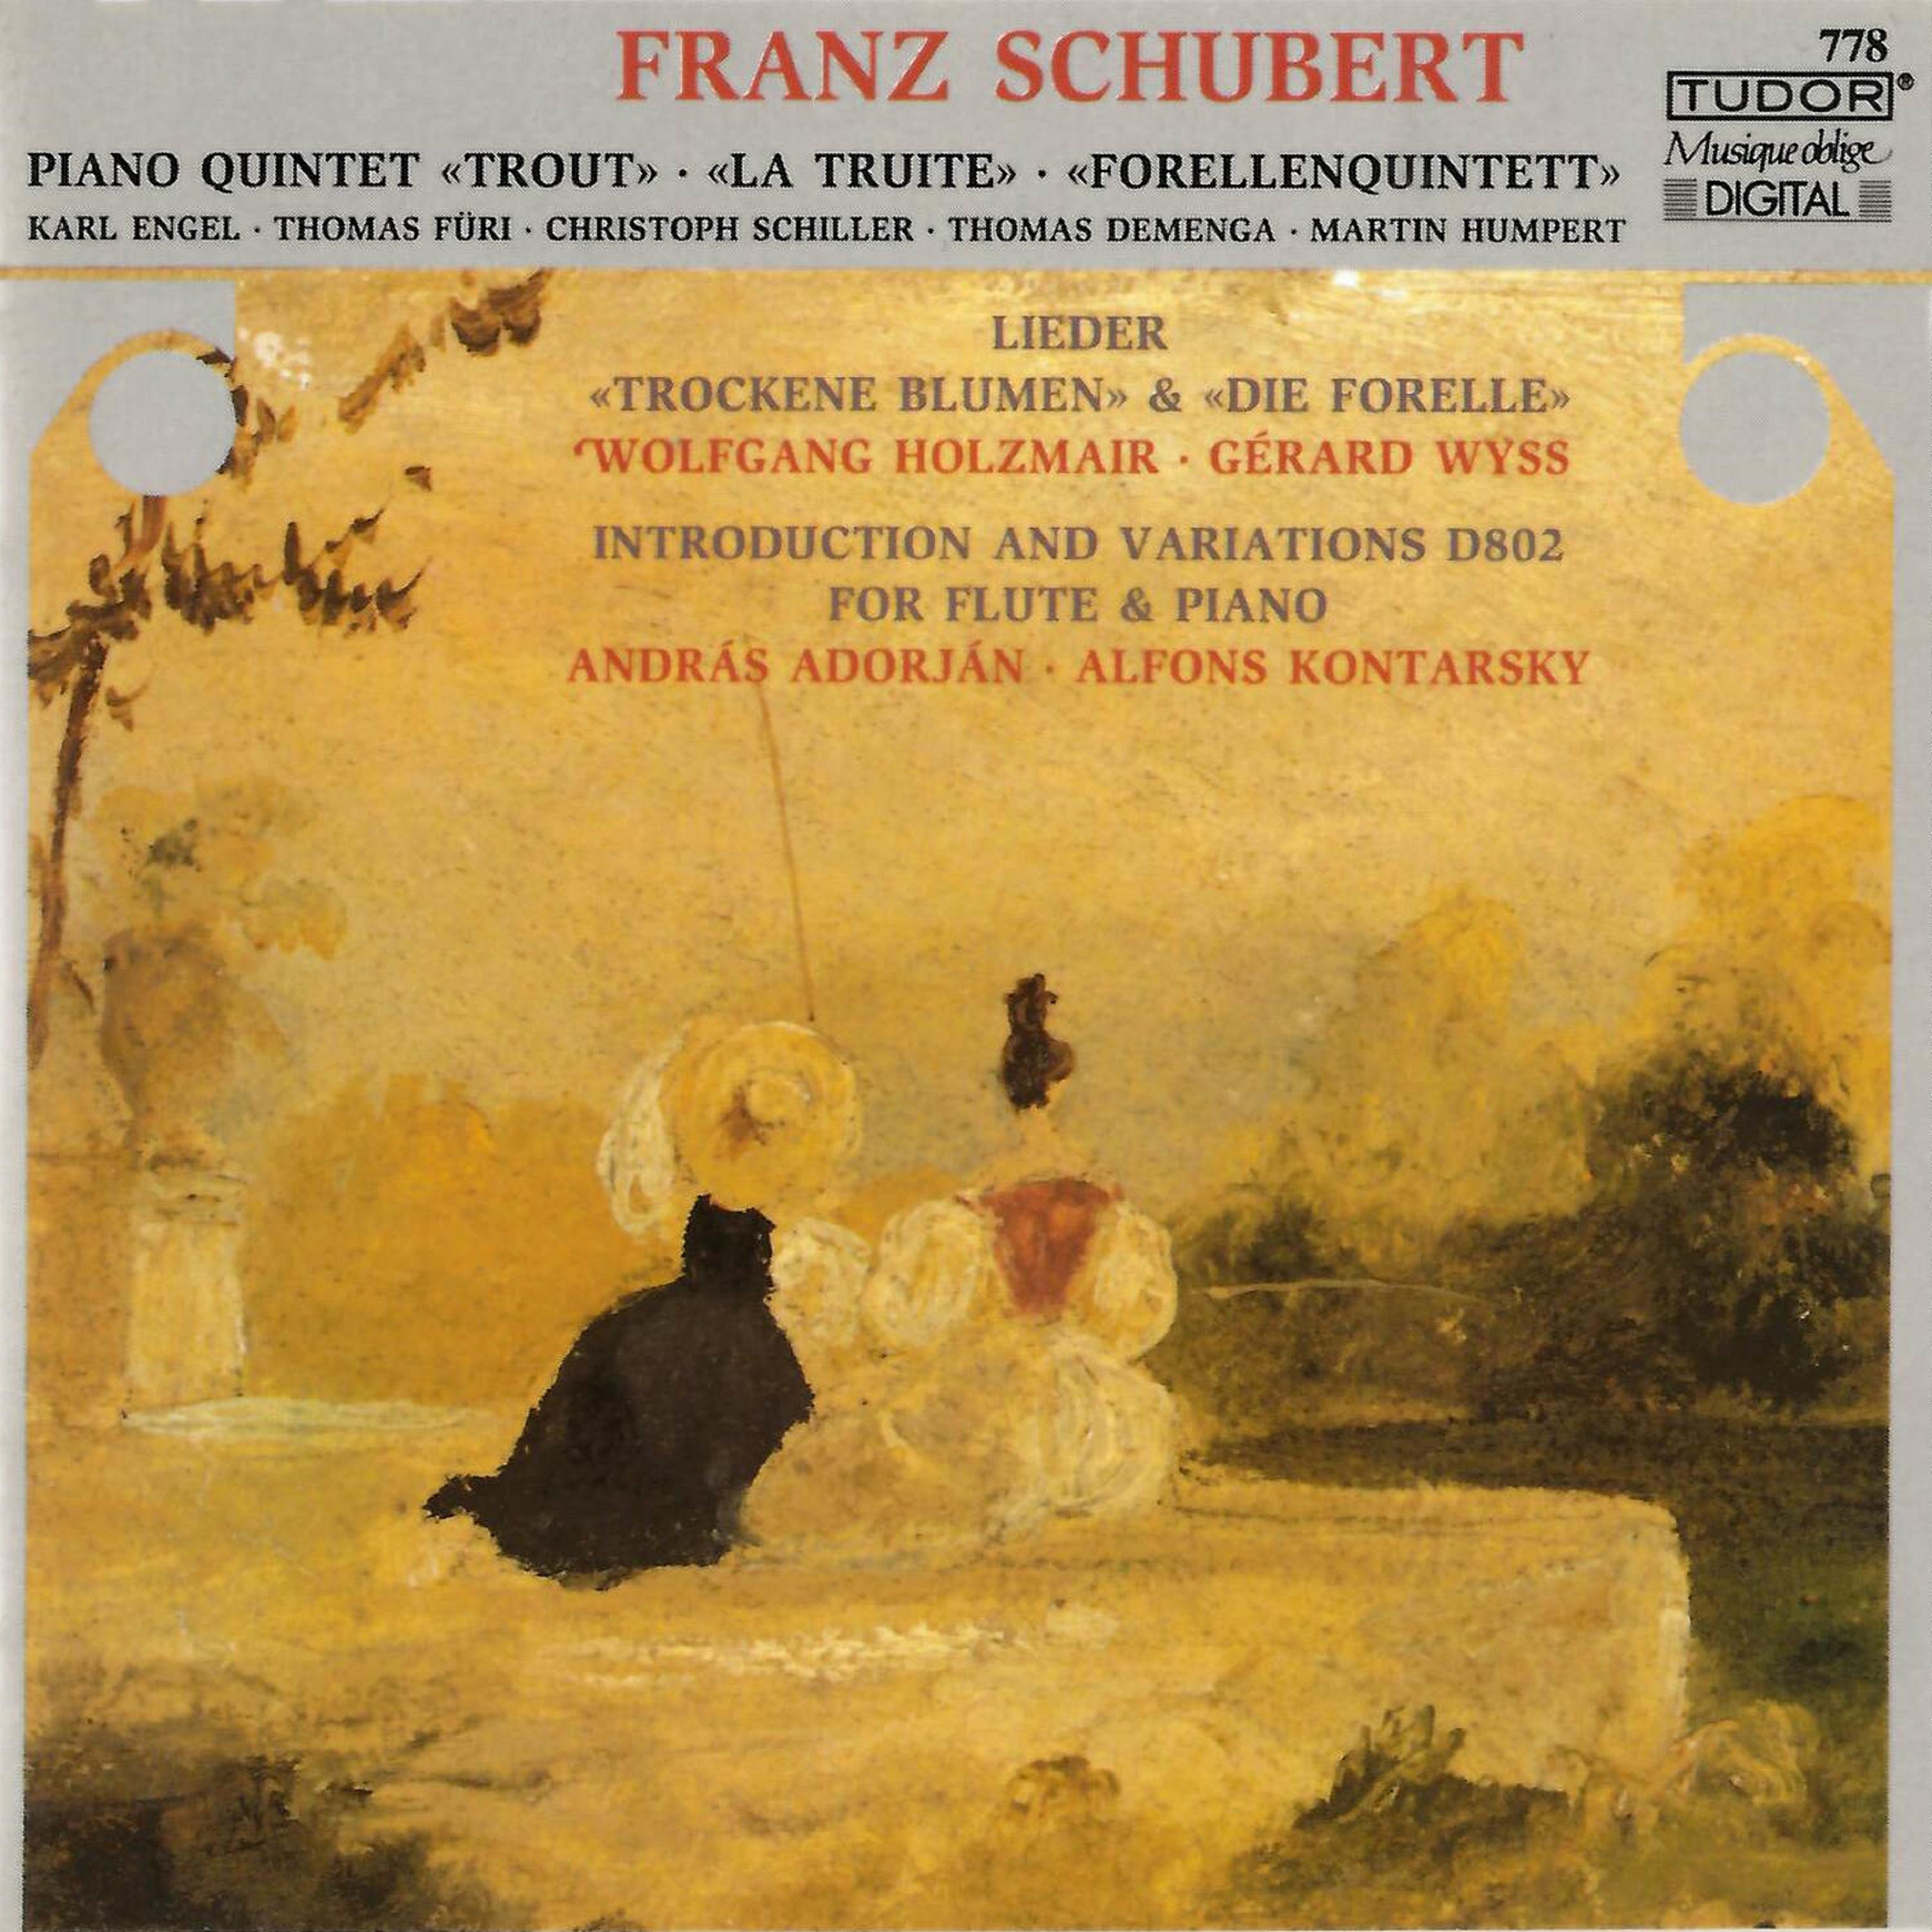 SCHUBERT, F.: Piano Quintet in A Major, " Die Forelle"  Lieder Fü ri, C. Schiller, T. Demenga, Humpert, Engel, Holzmair, Wyss